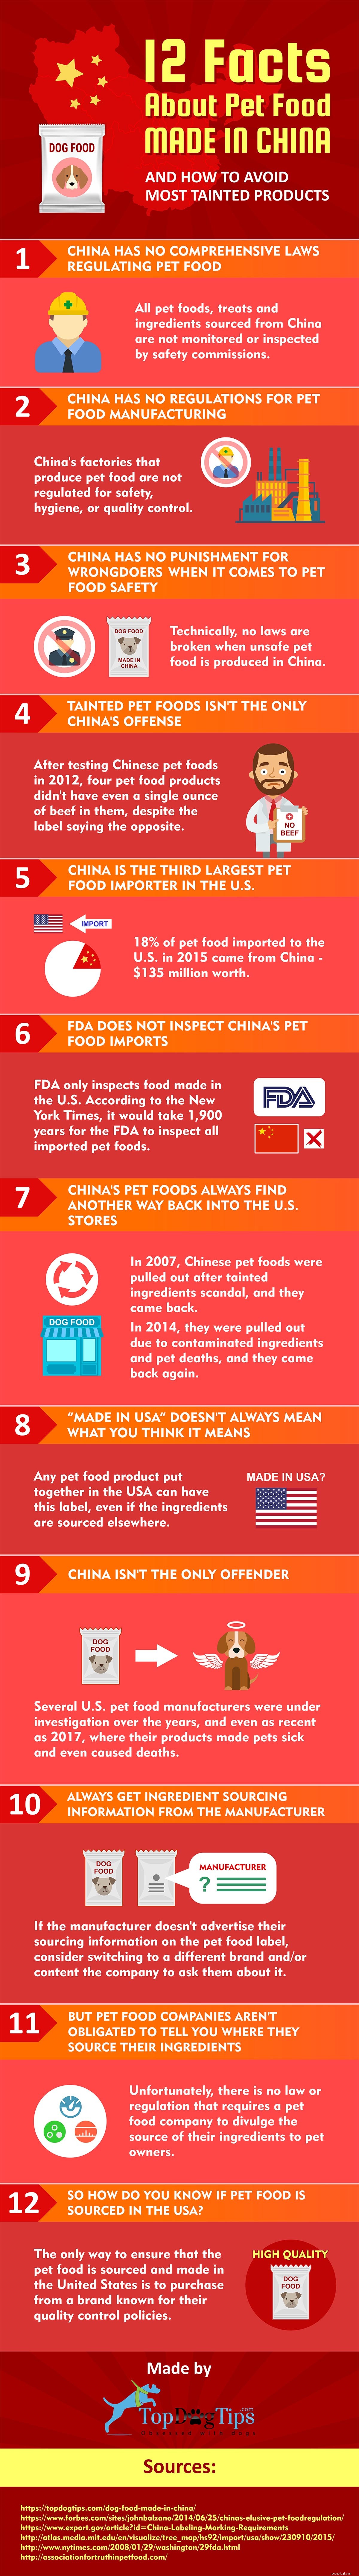 12 fakta om hundmat tillverkad i Kina [Infographic]